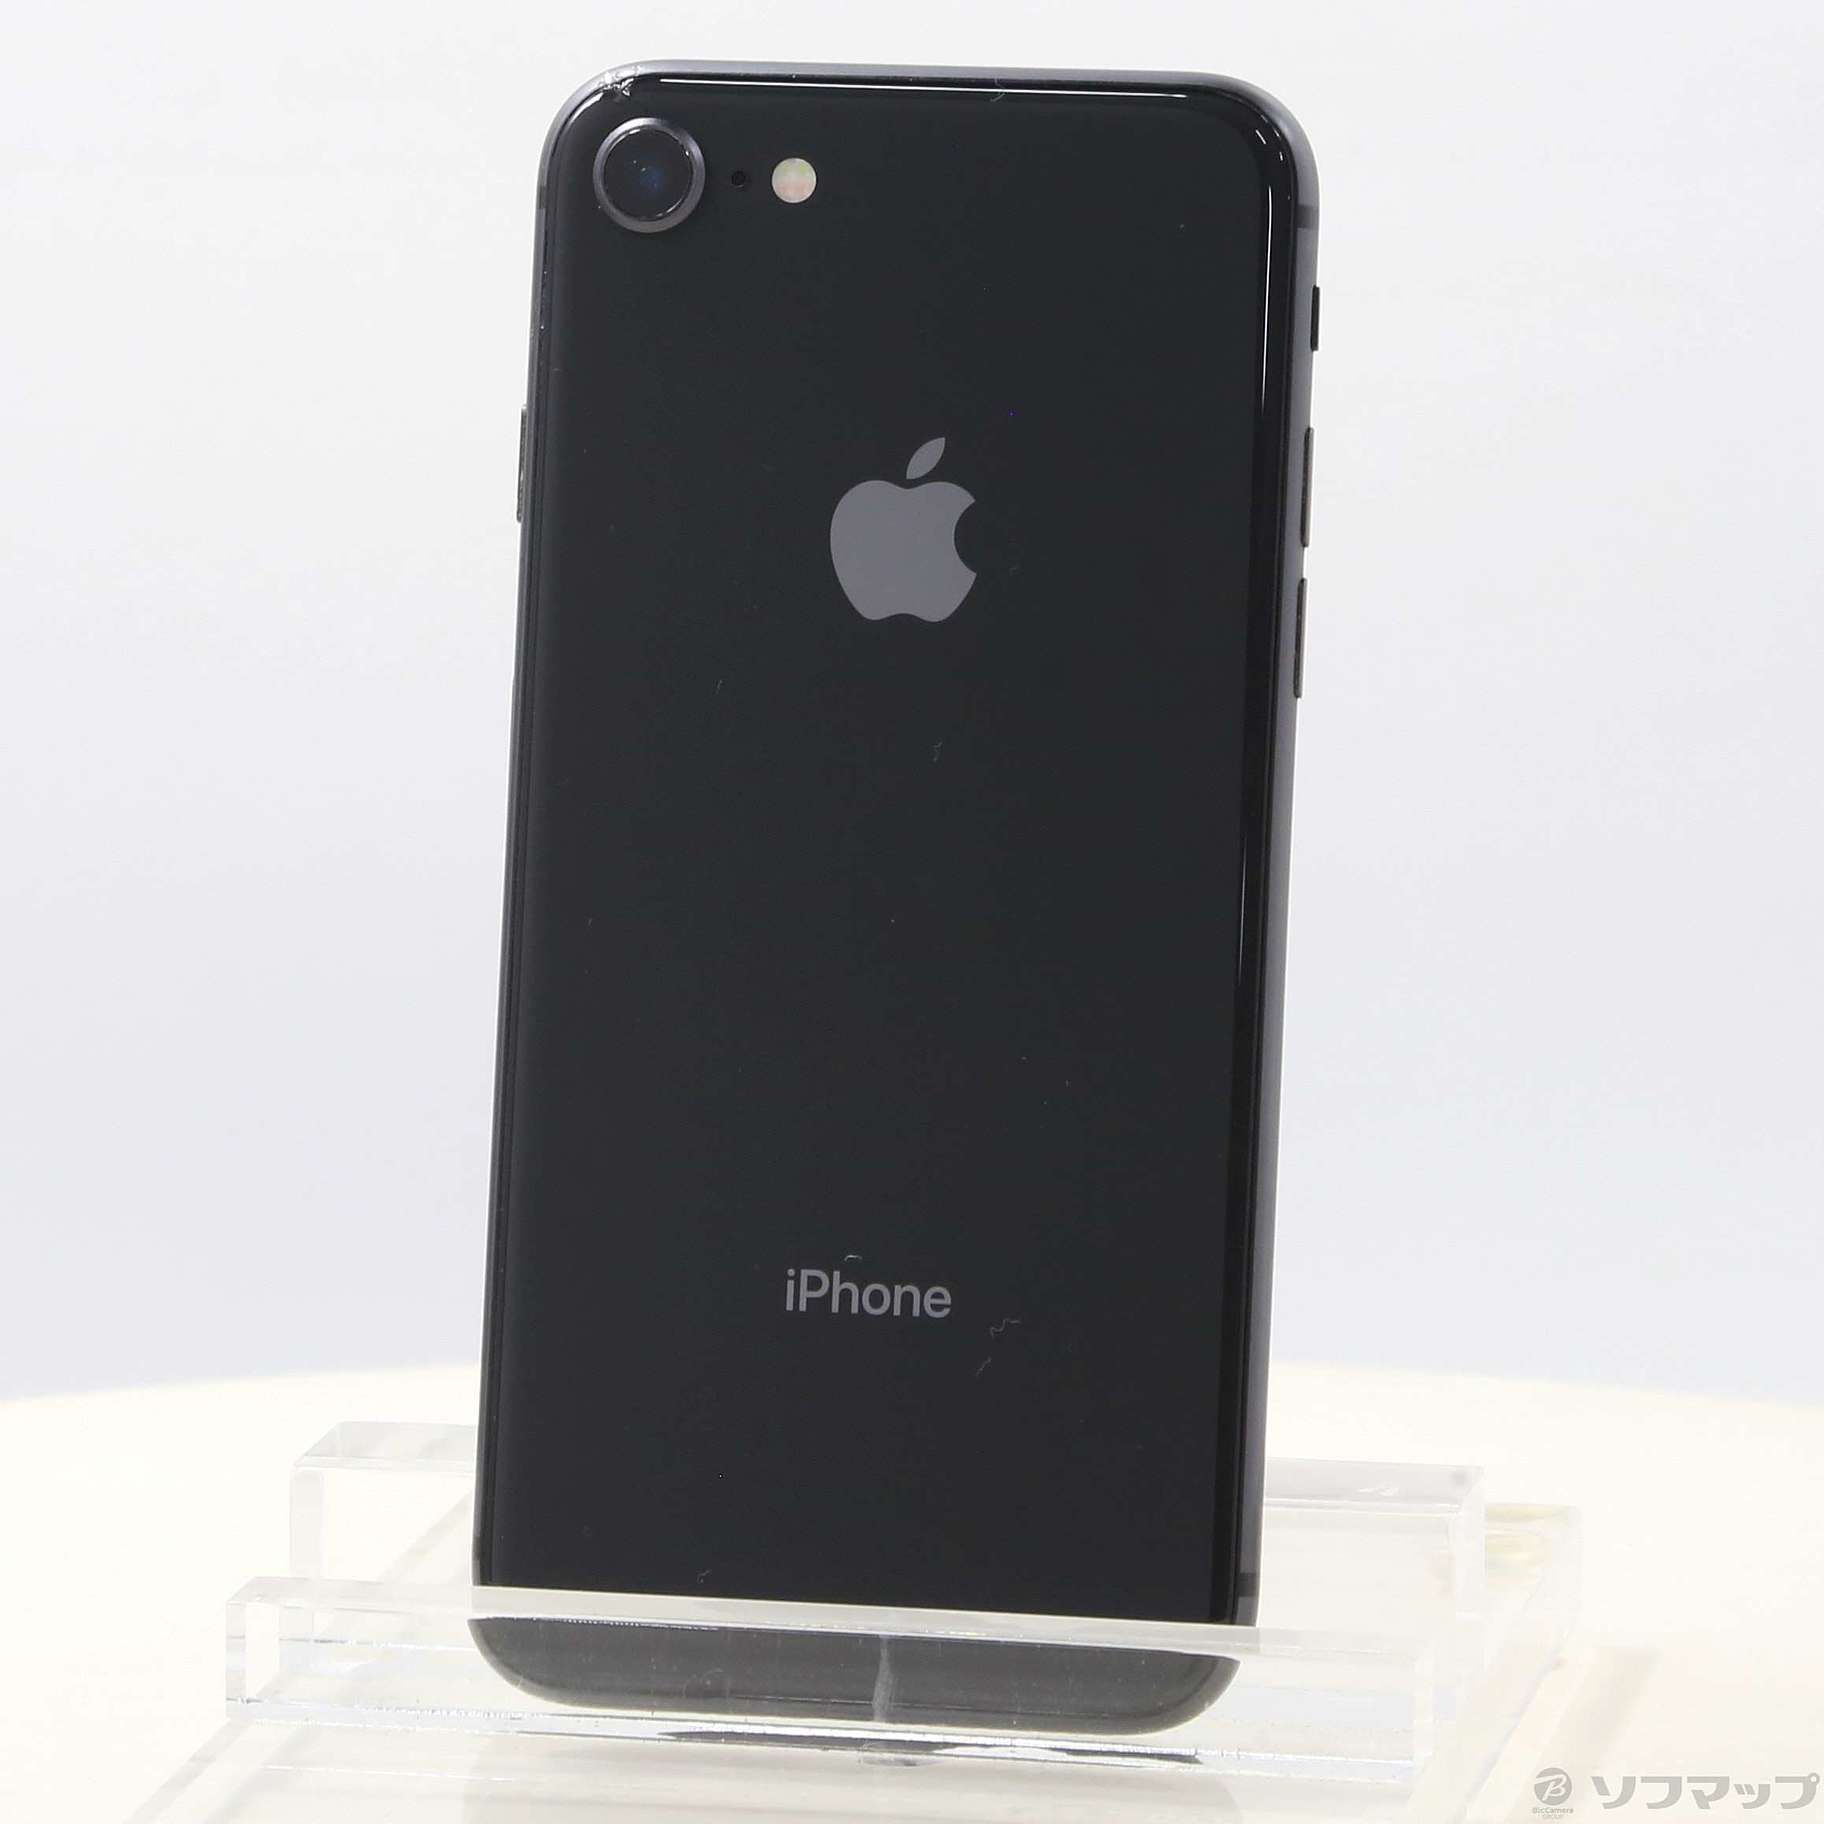 iPhone8 64GB スペースグレイスマートフォン本体